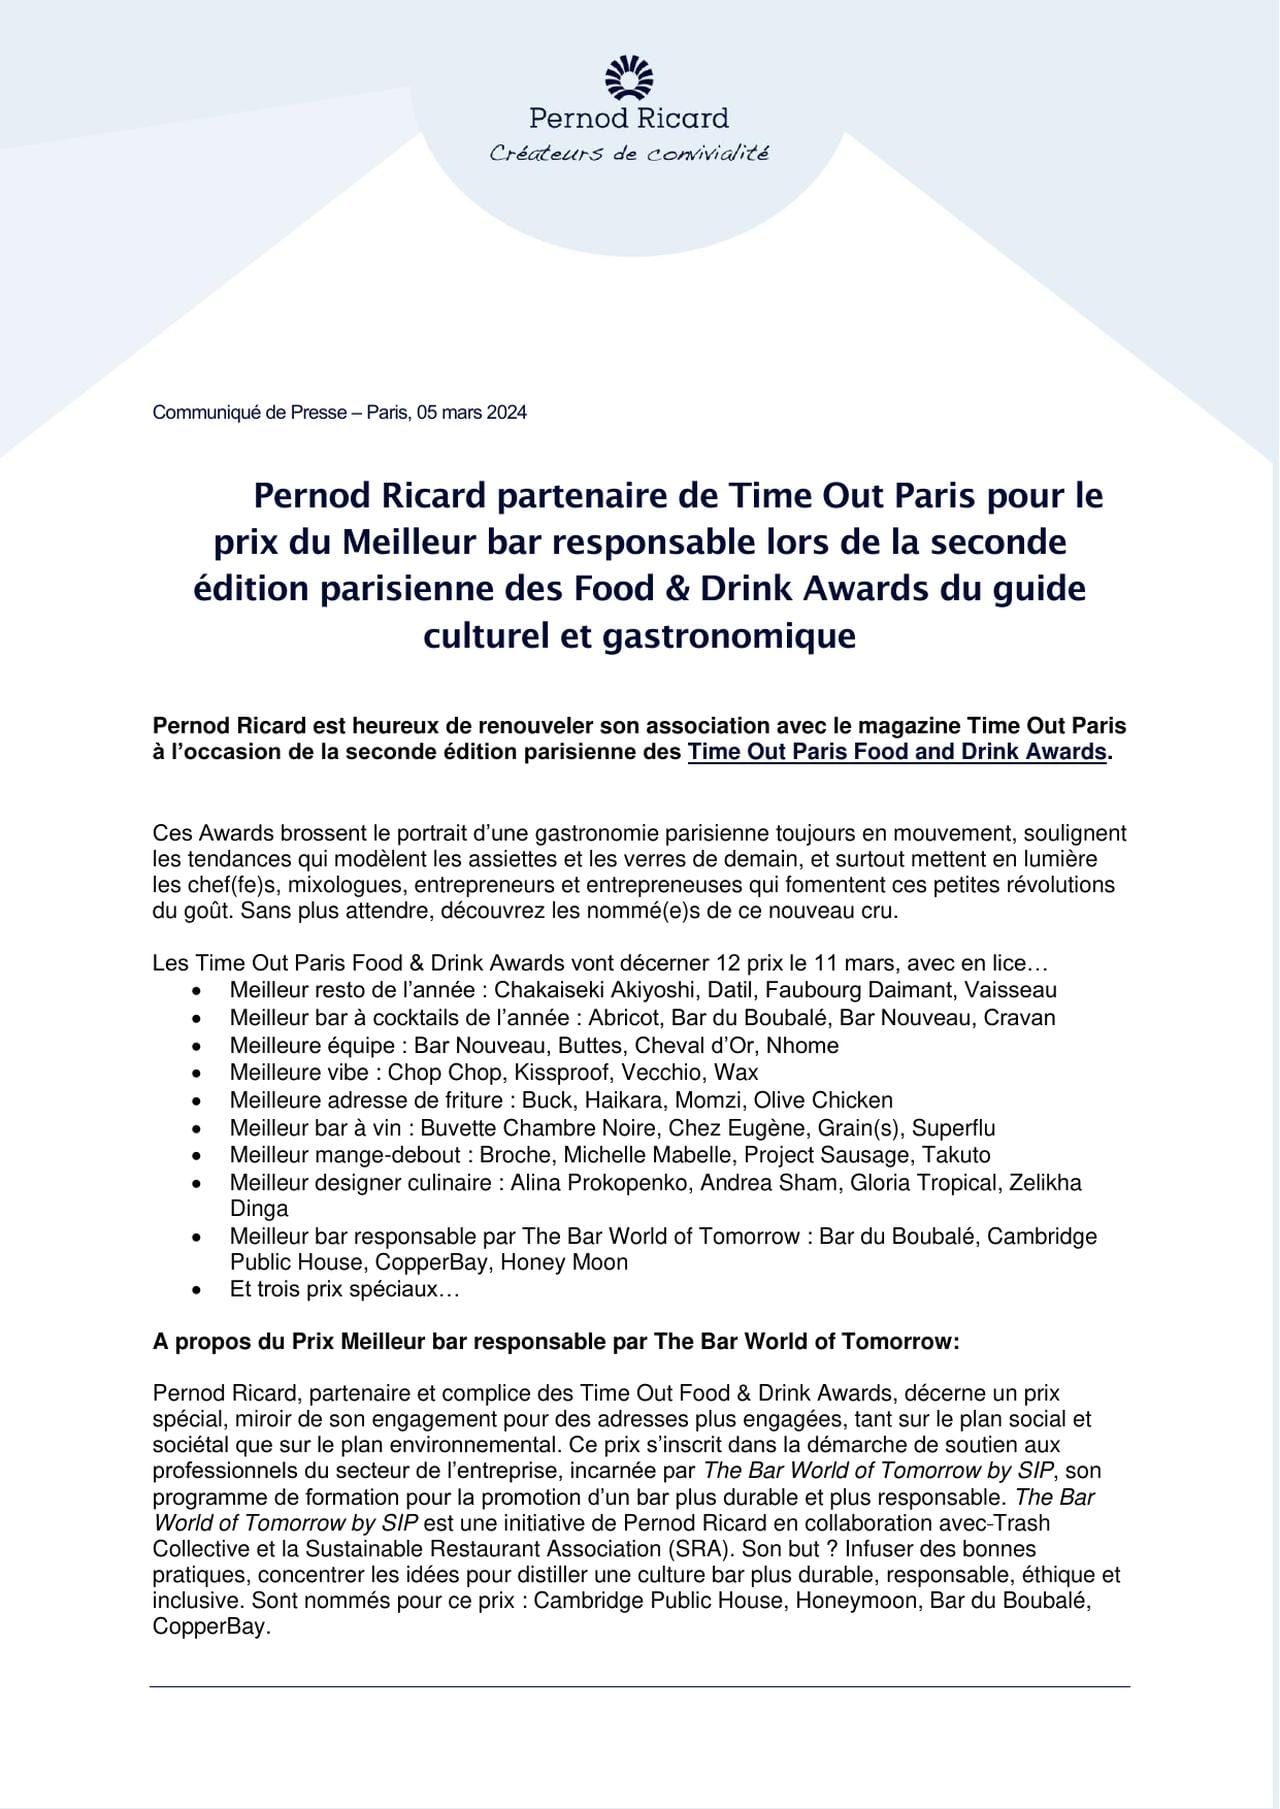 Pernod Ricard partenaire de Time Out Paris pour le prix du Meilleur bar responsable aux Food & Drink Awards 2024